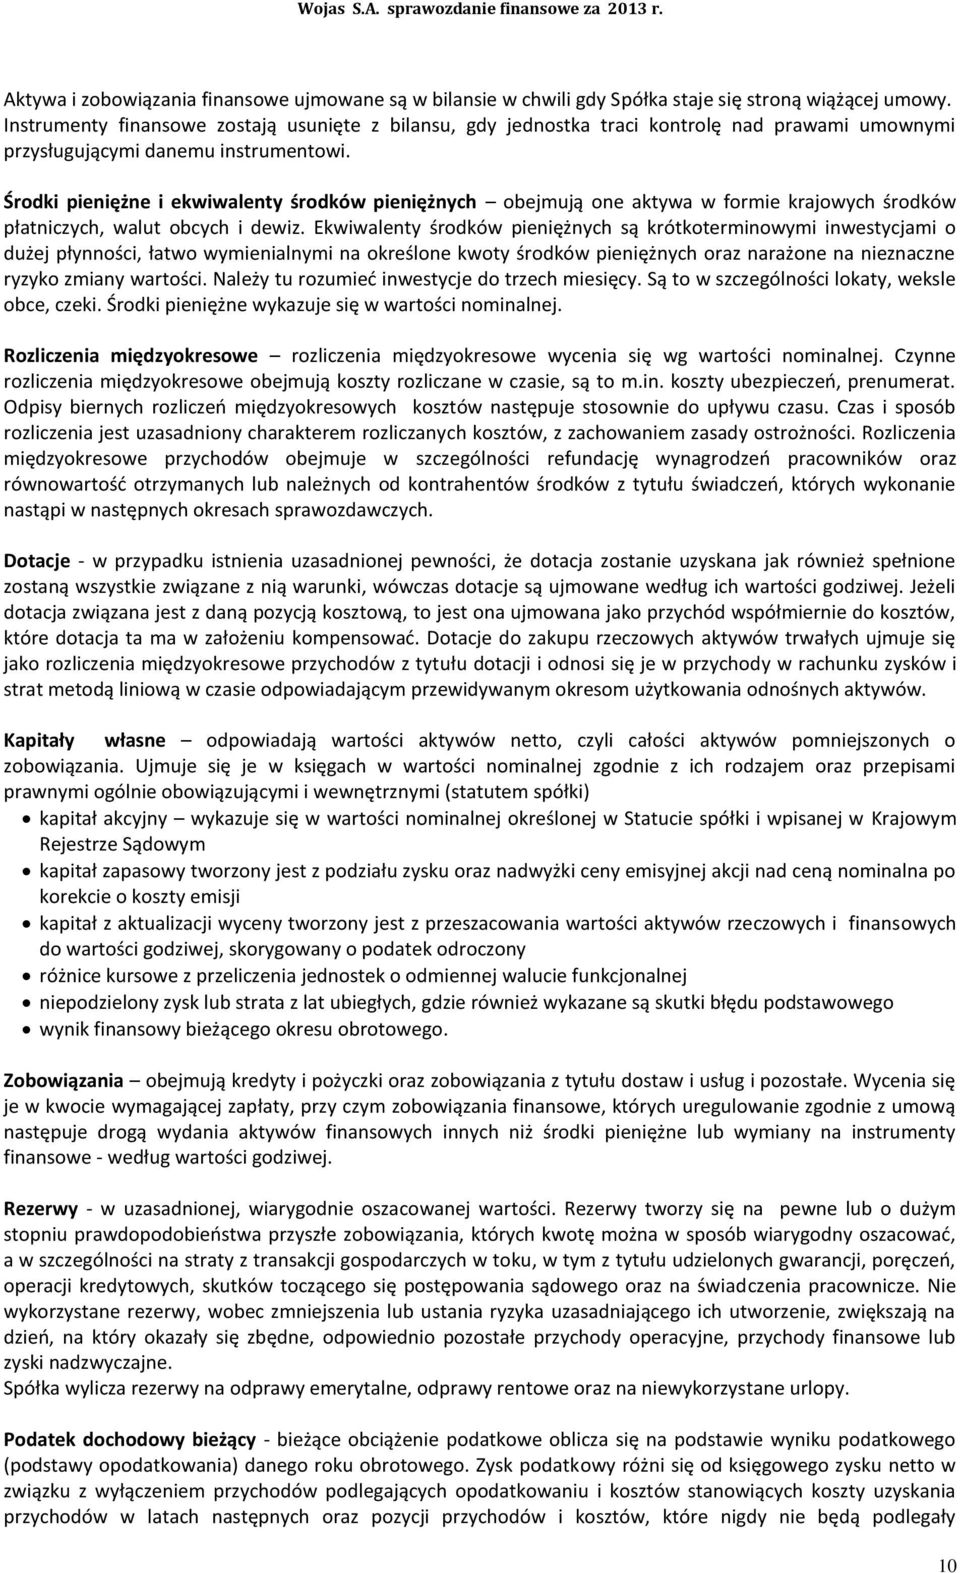 WOJAS S.A. Sprawozdanie finansowe za okres 2013 roku. Nowy Targ, dnia 09  kwietnia 2014 roku - PDF Darmowe pobieranie